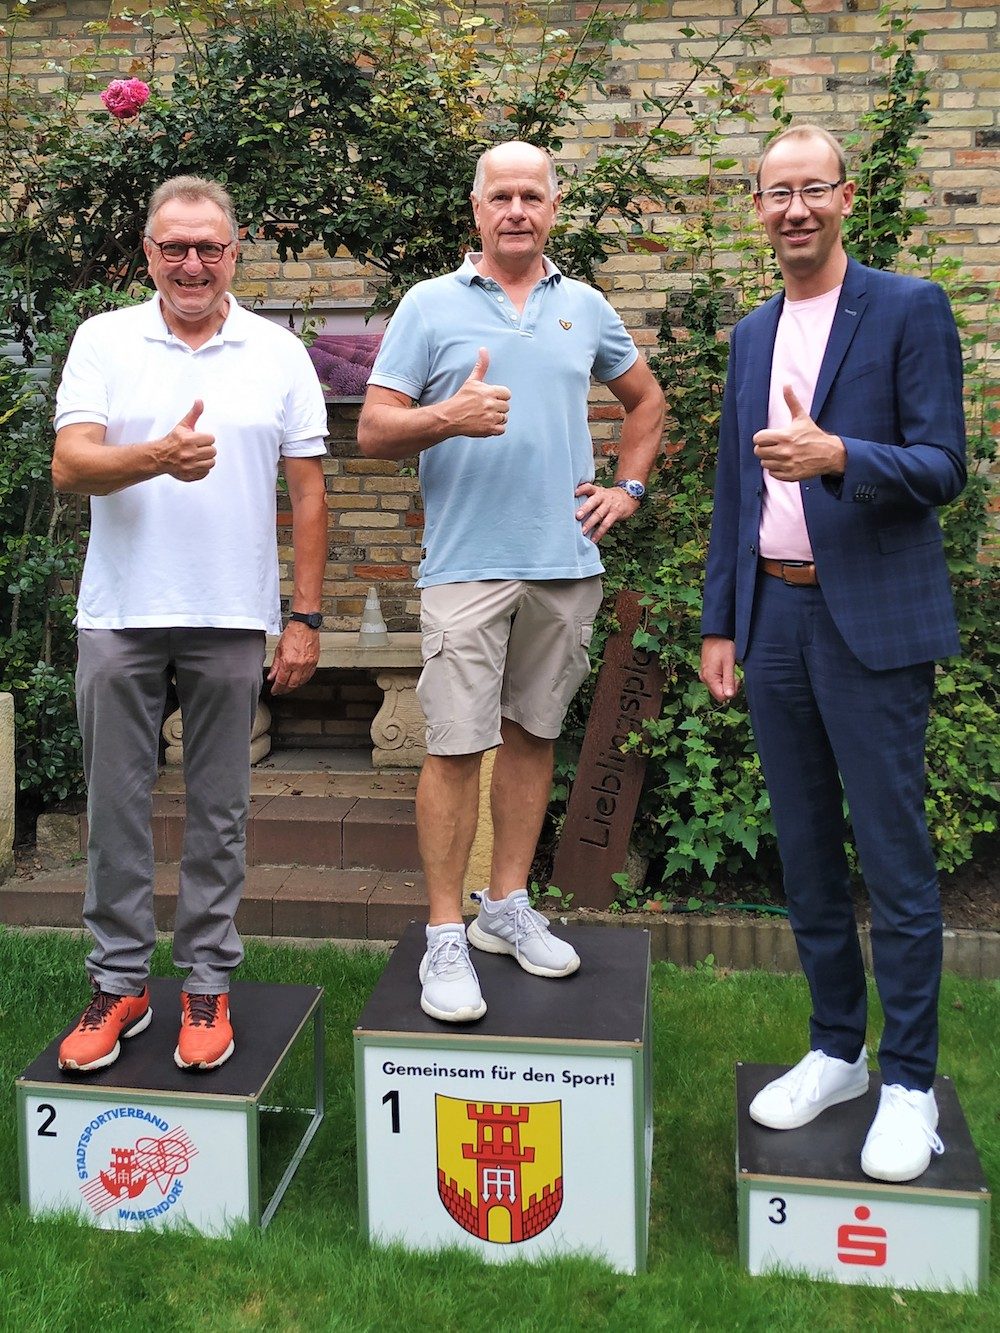 Stadtsportverband Warendorf stellt Siegerpodest für Sportveranstaltungen seiner Mitgliedsvereine zur Verfügung